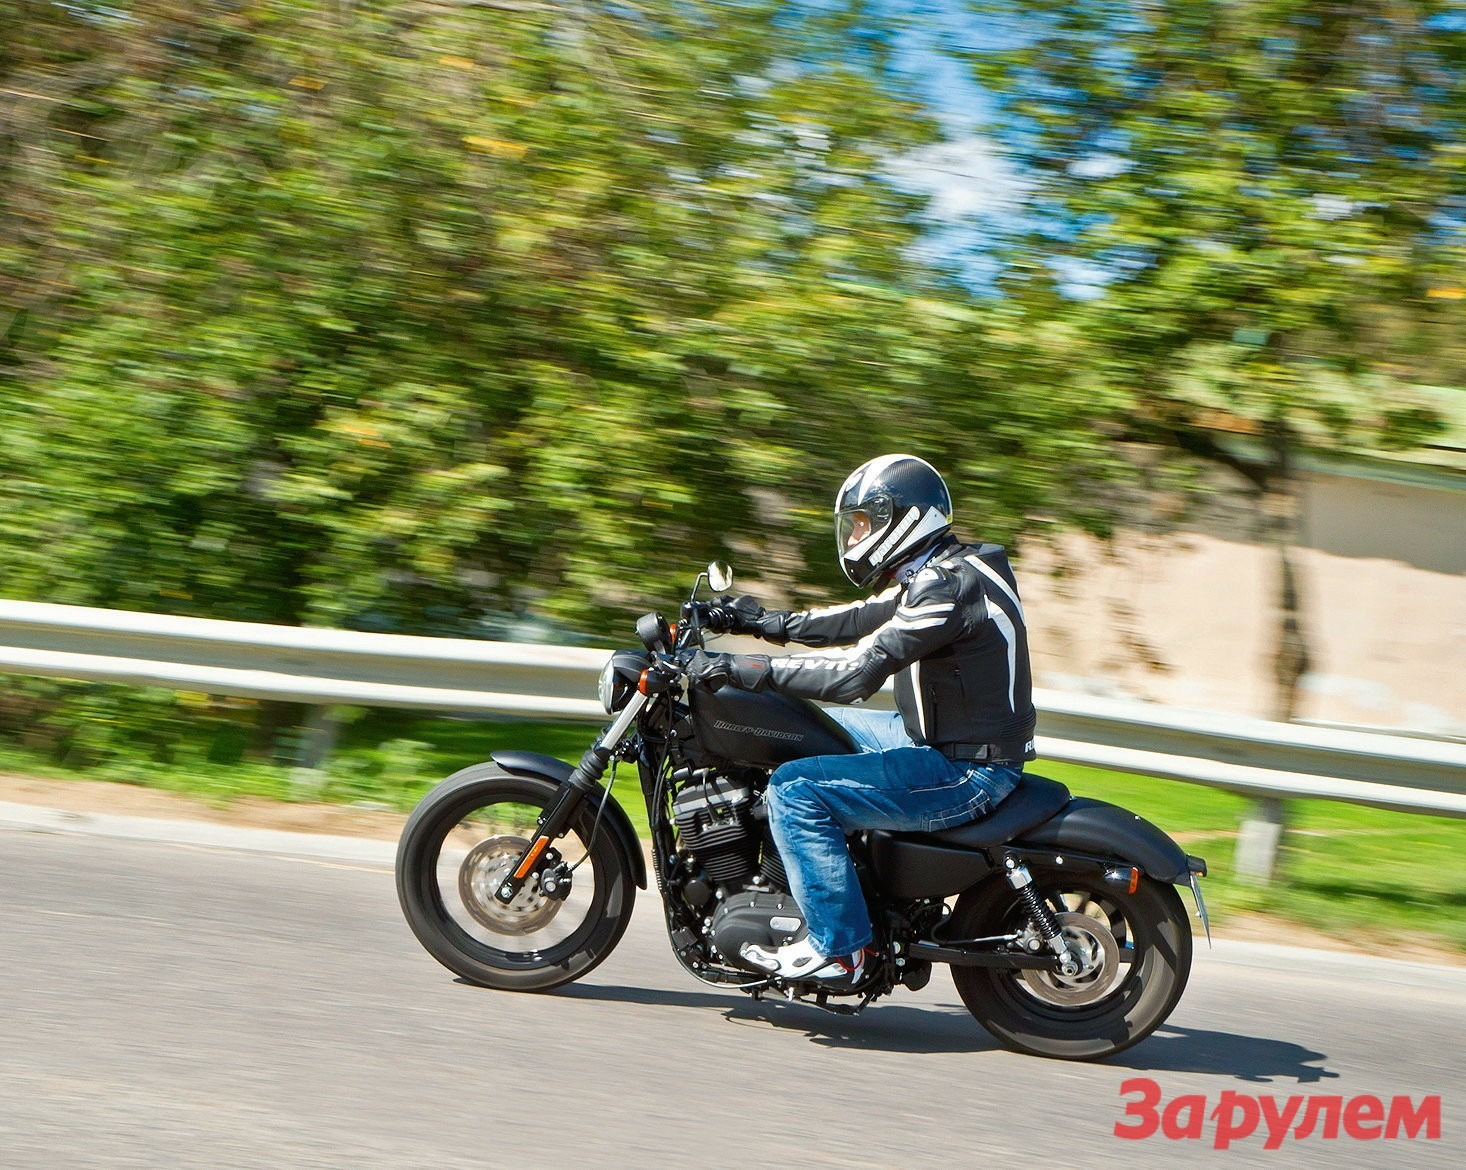 Выбор подержанного мотоцикла — Советы ростовских мотоциклистов.